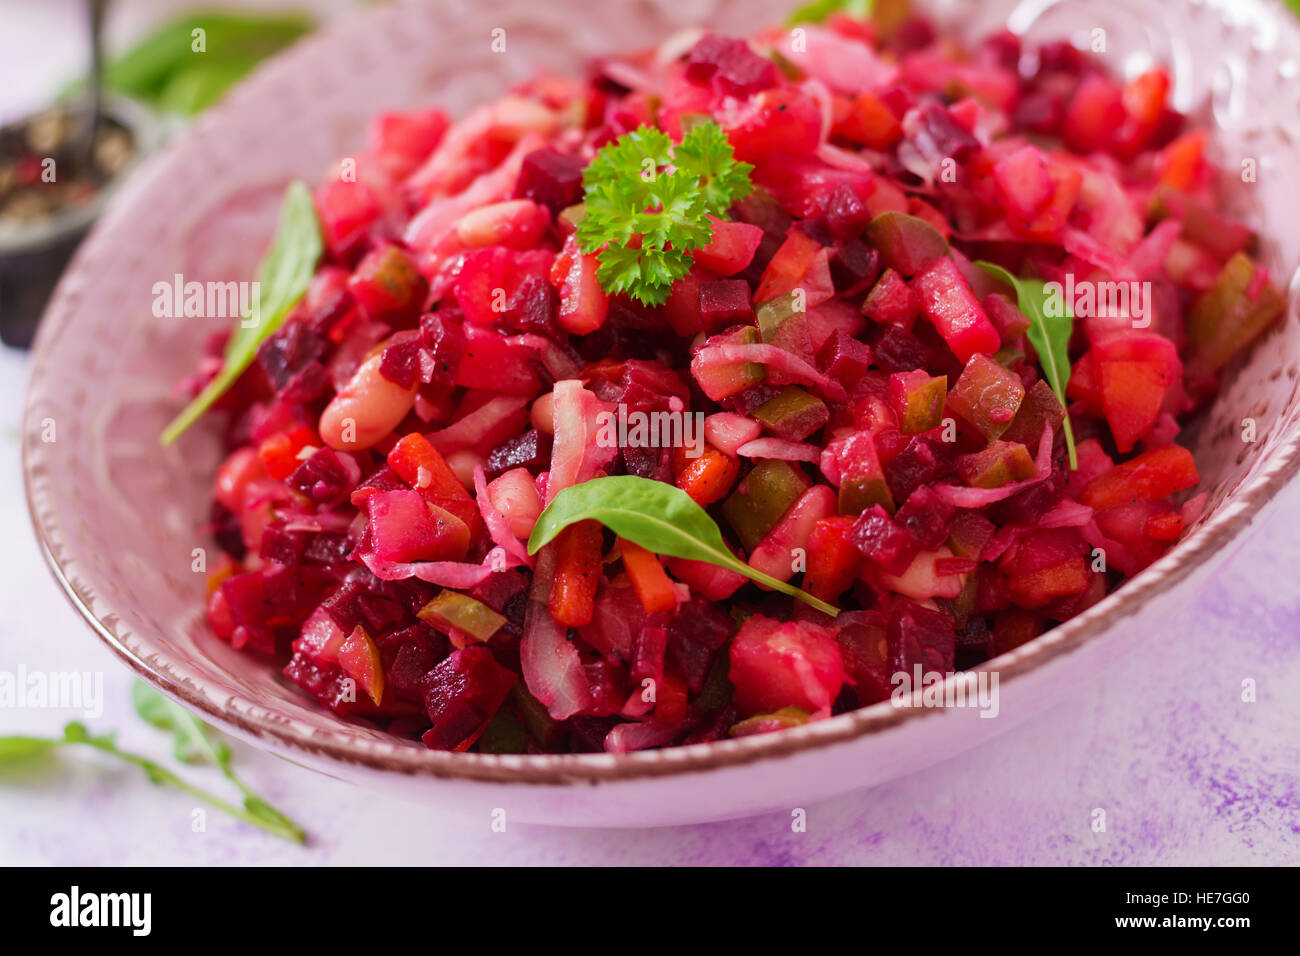 Insalata di barbabietole da insalata in una ciotola rosa Foto Stock